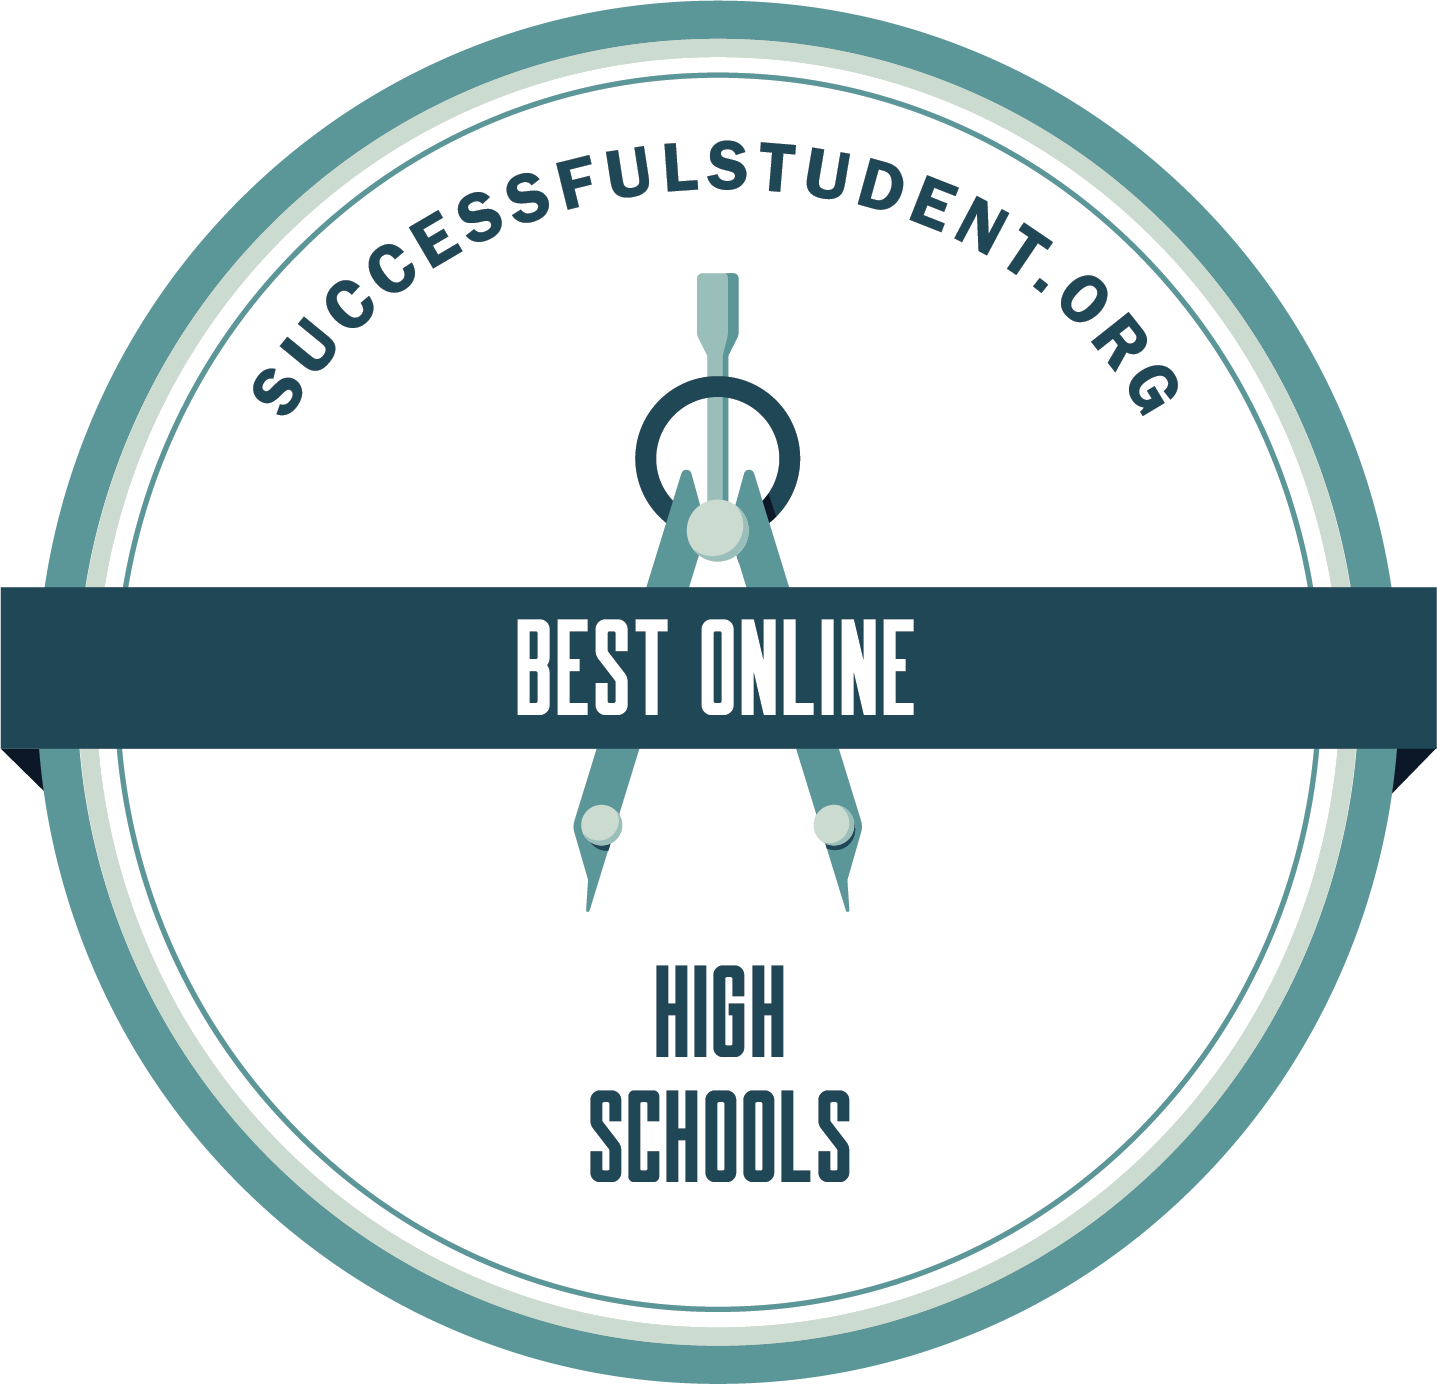 The Best Online High Schools's Badge